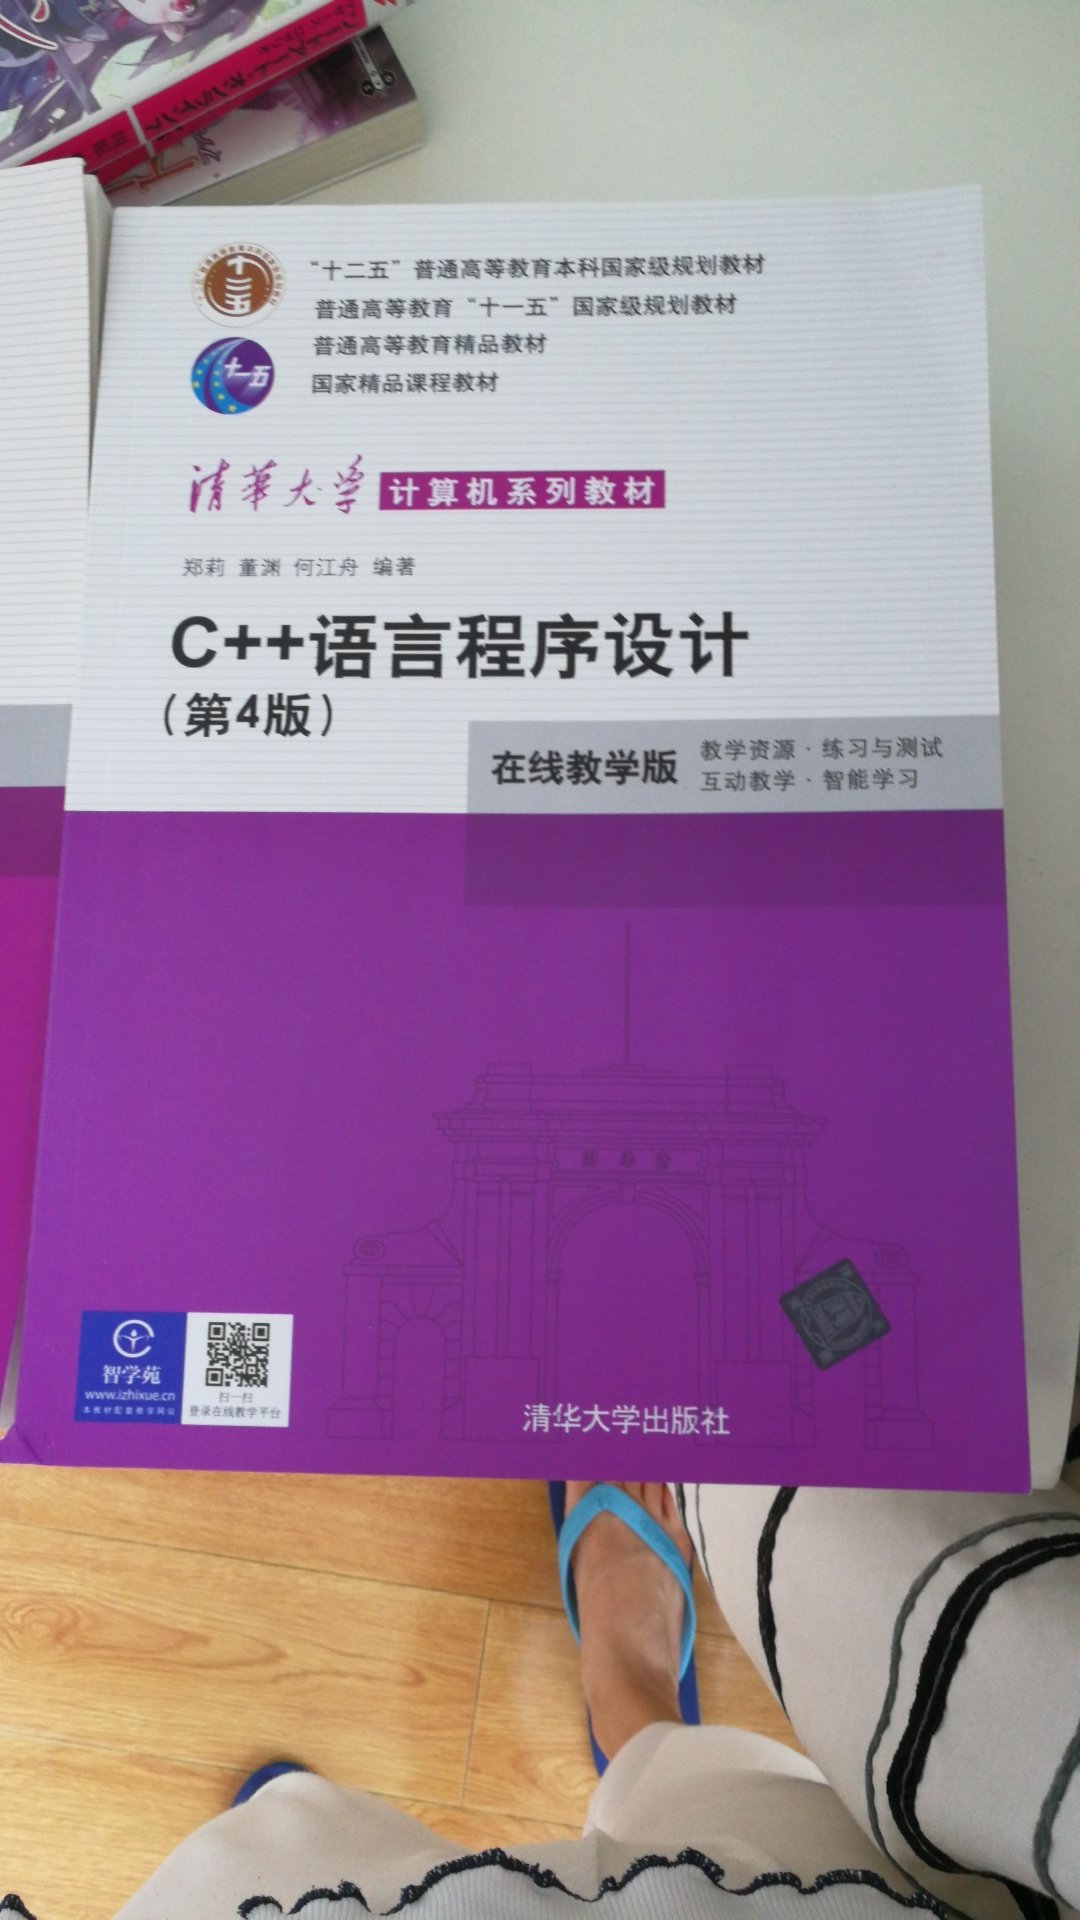 清华大学，计算机系列教材，自学C++，这套教材非常适合初学者，浅显易懂，排版流畅，字体大小适中。